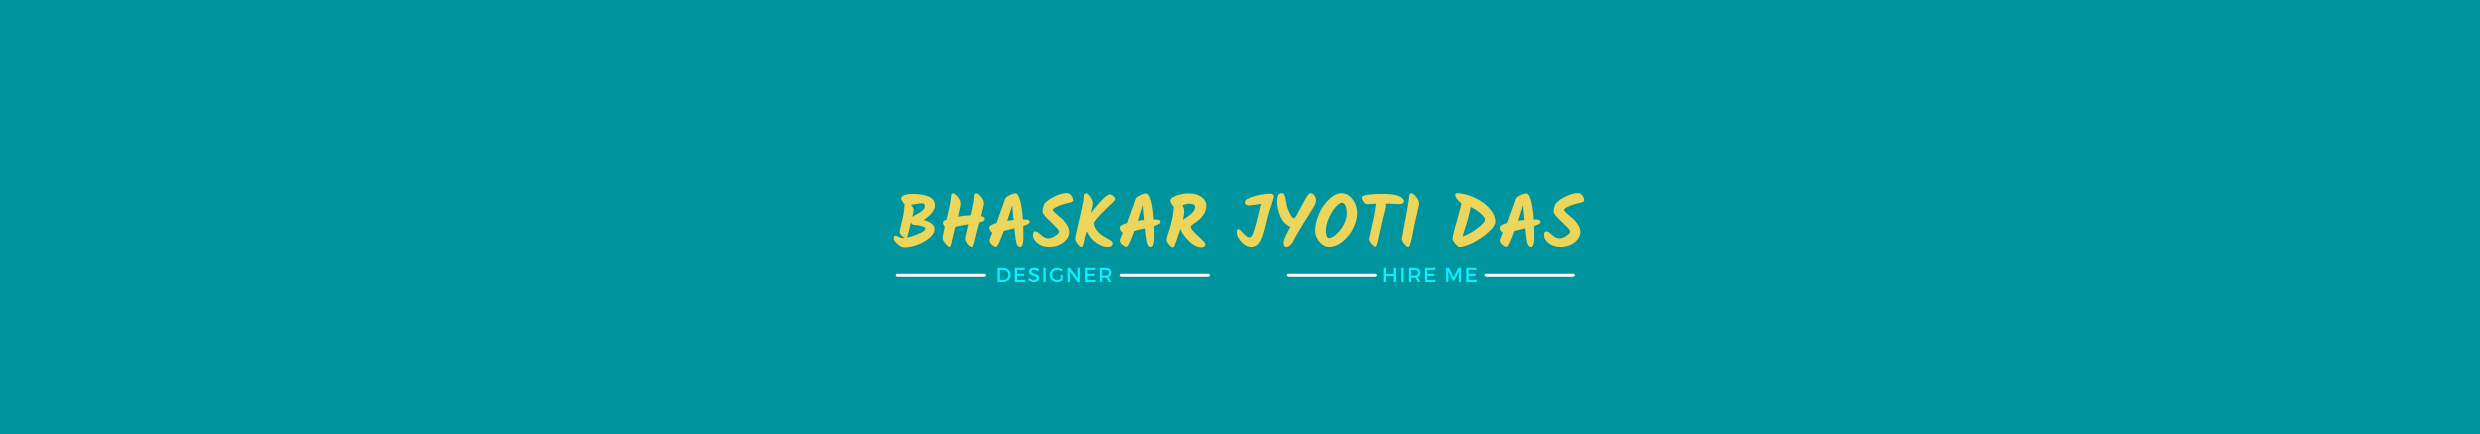 Bhaskar Jyoti Das profil başlığı